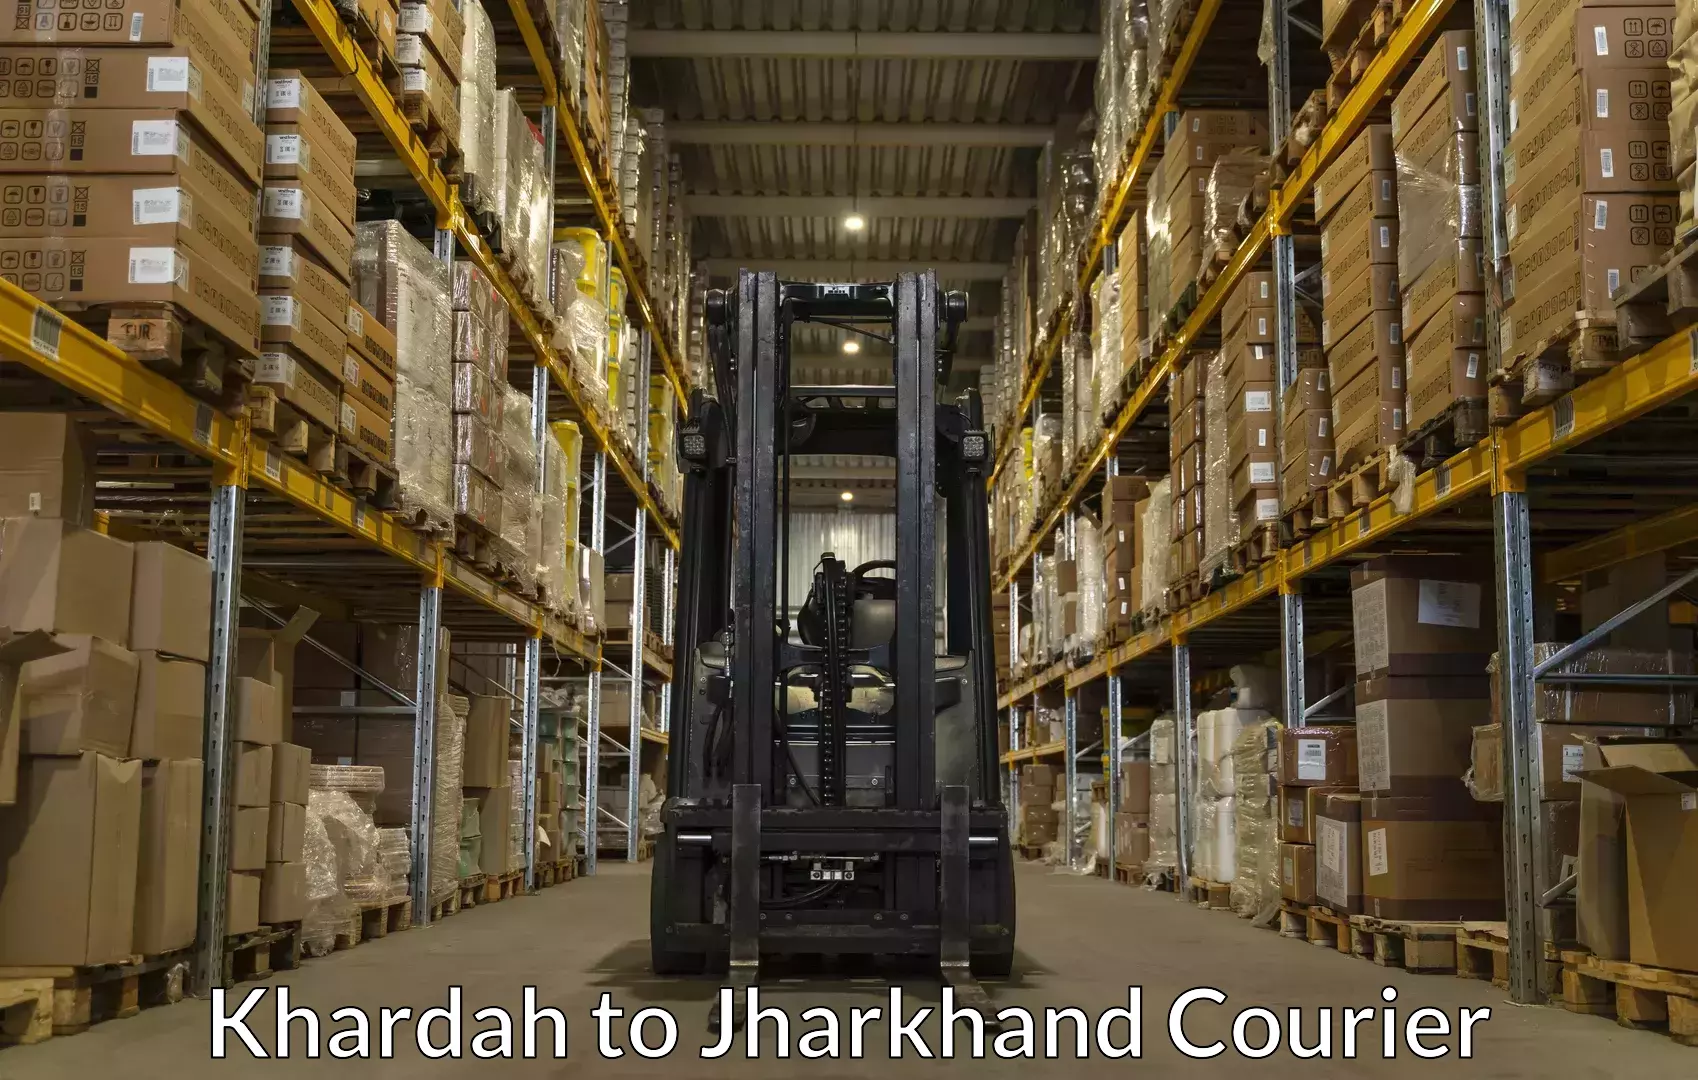 Luggage delivery network Khardah to IIT Dhanbad